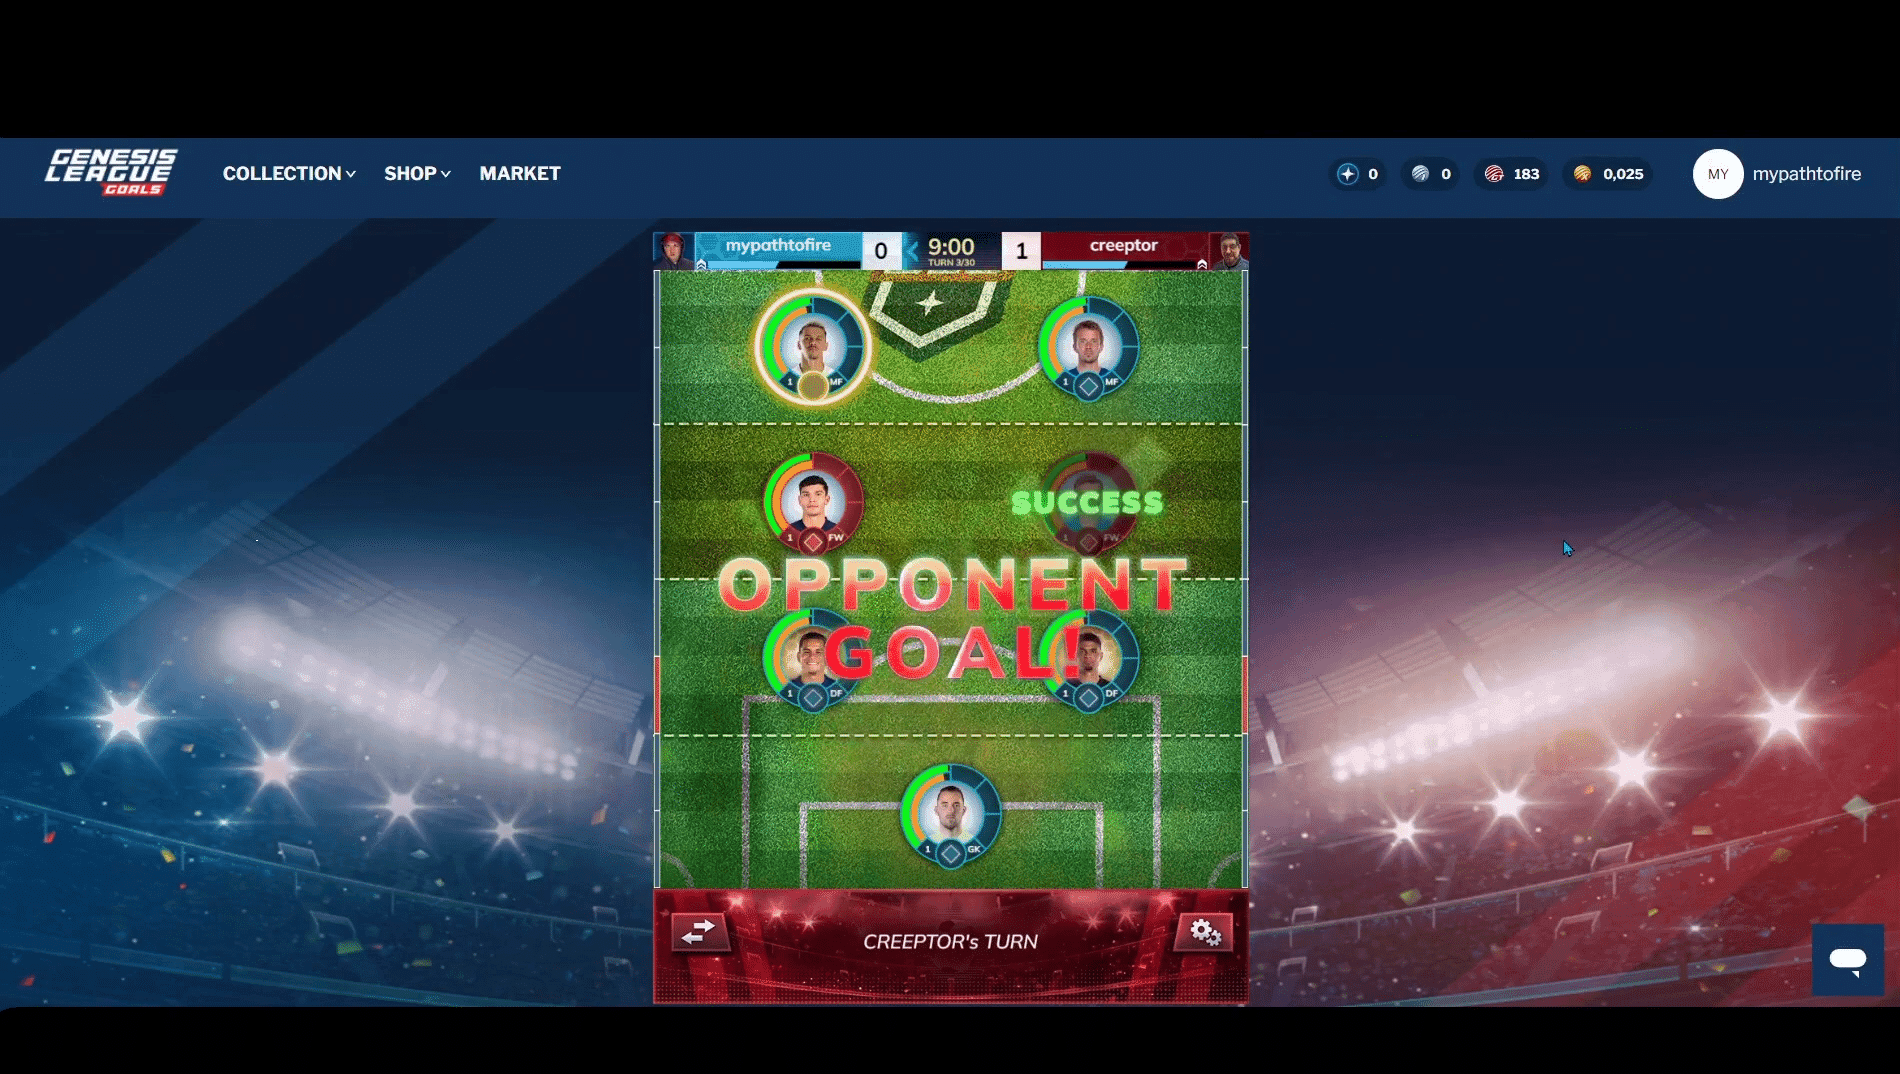 Genesis League Goals oferece um portal oficial para coletar, competir e ganhar por meio de cartões comerciais digitais licenciados do Major Soccer.